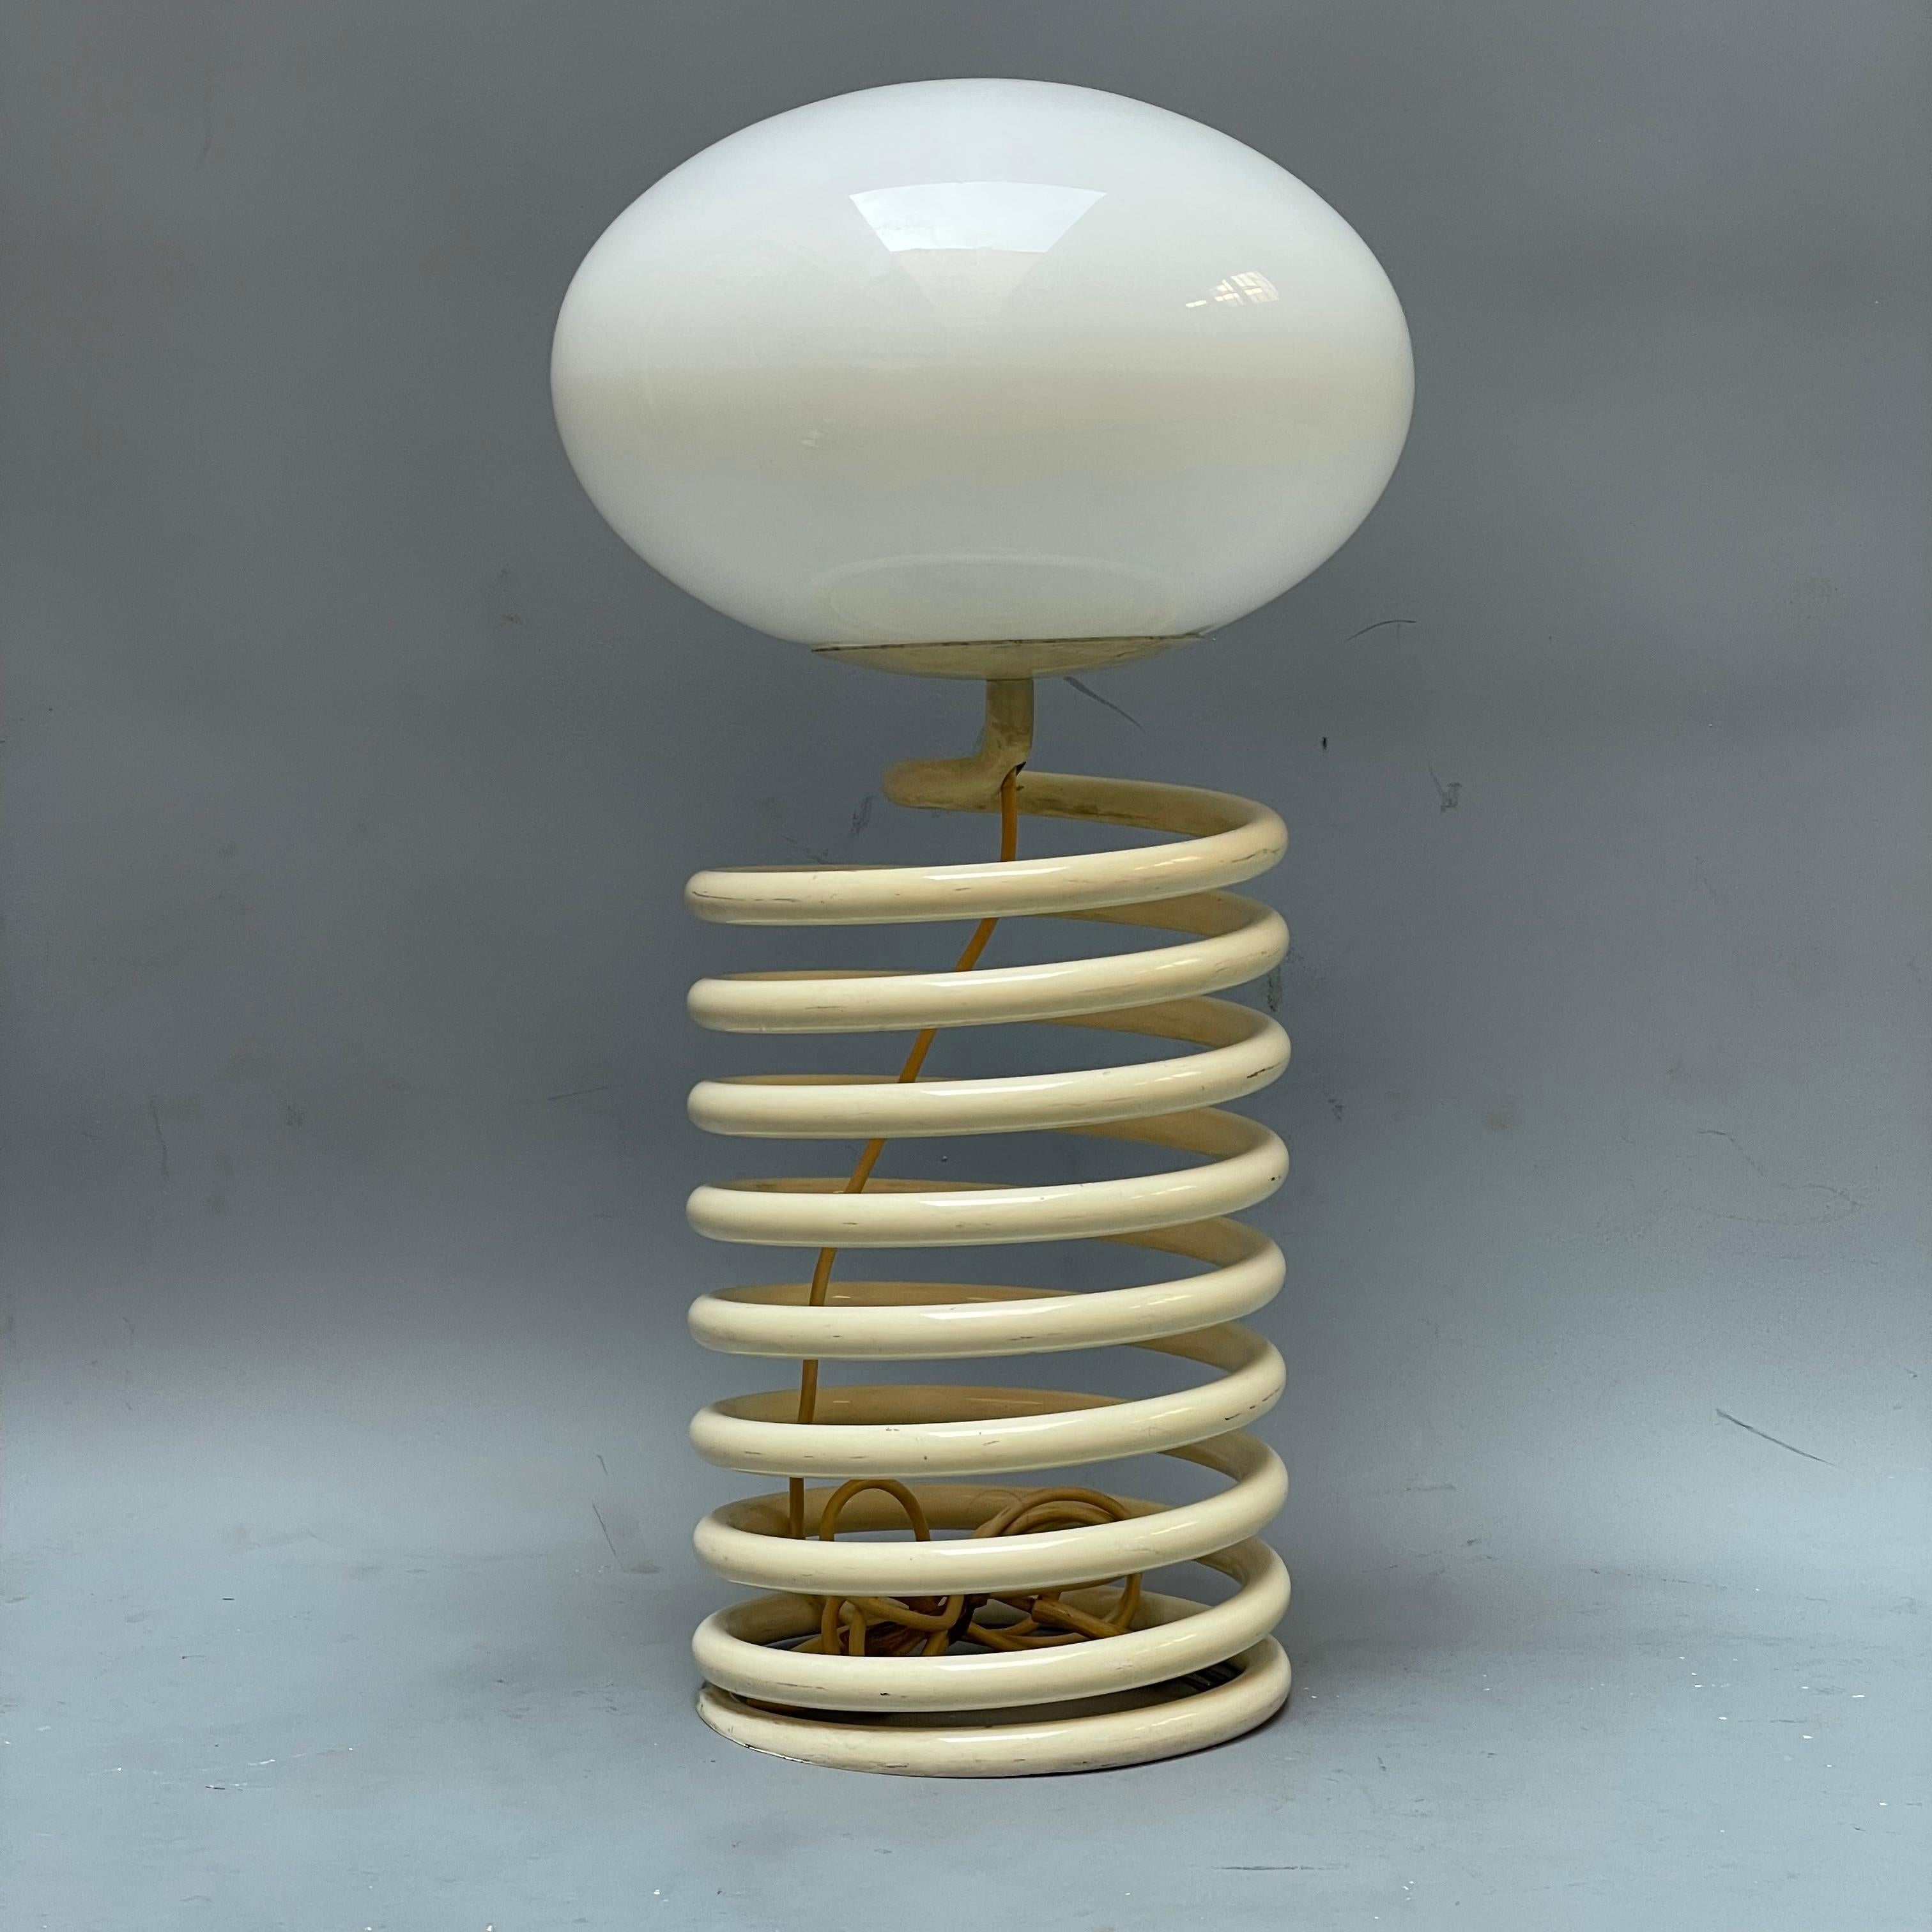 German Spiral lamp by Ingo Maurer